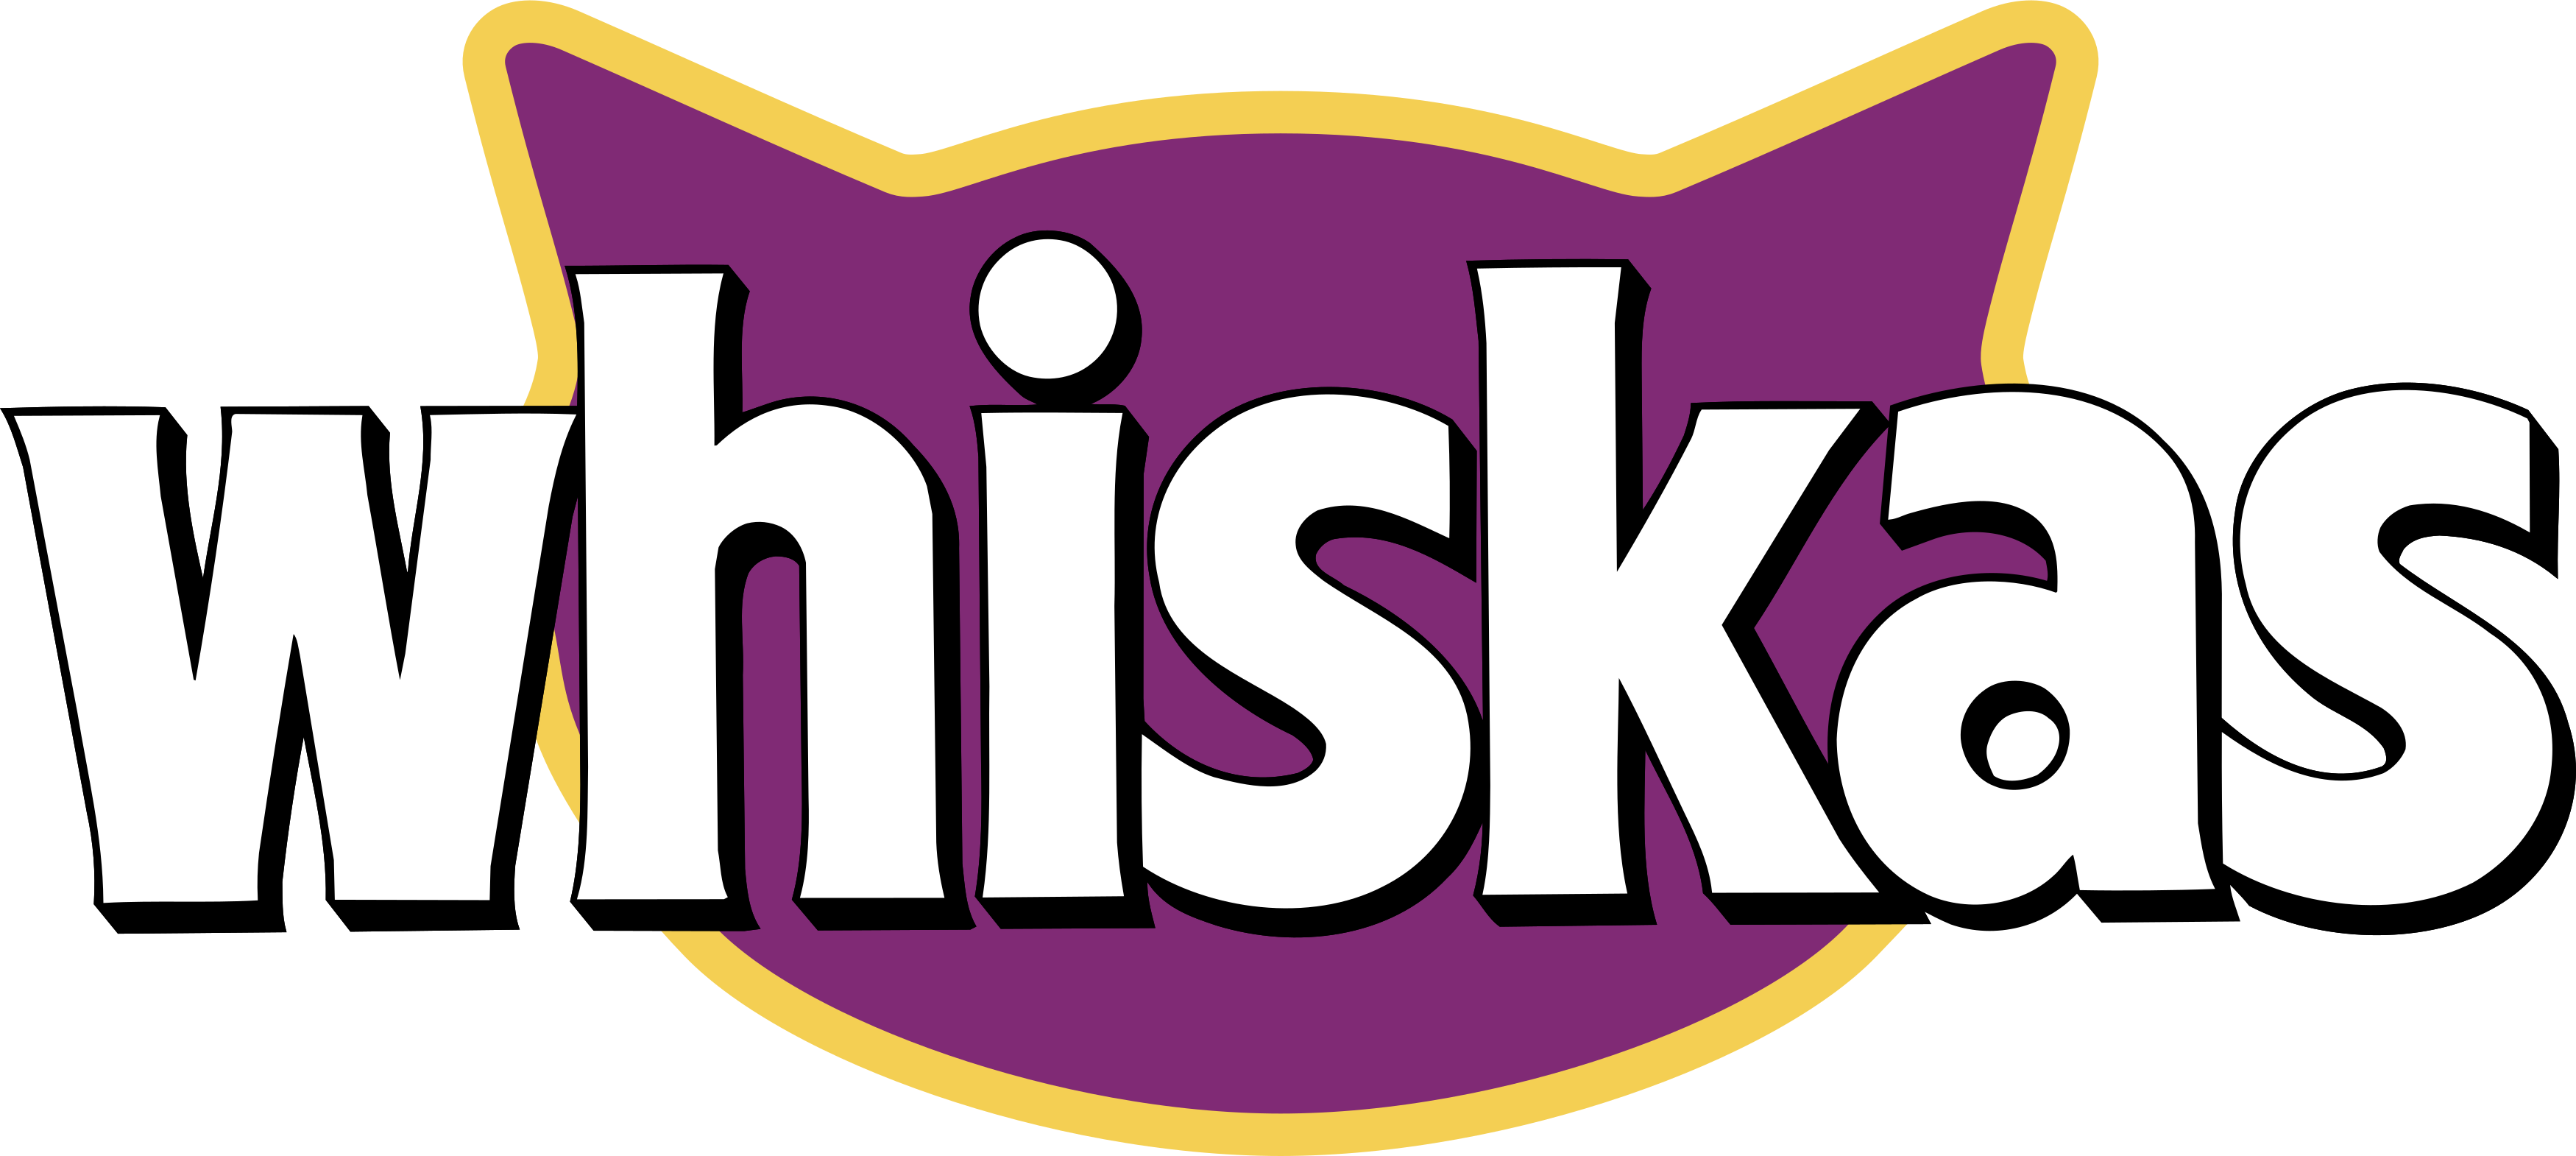 Whiskas Logo.